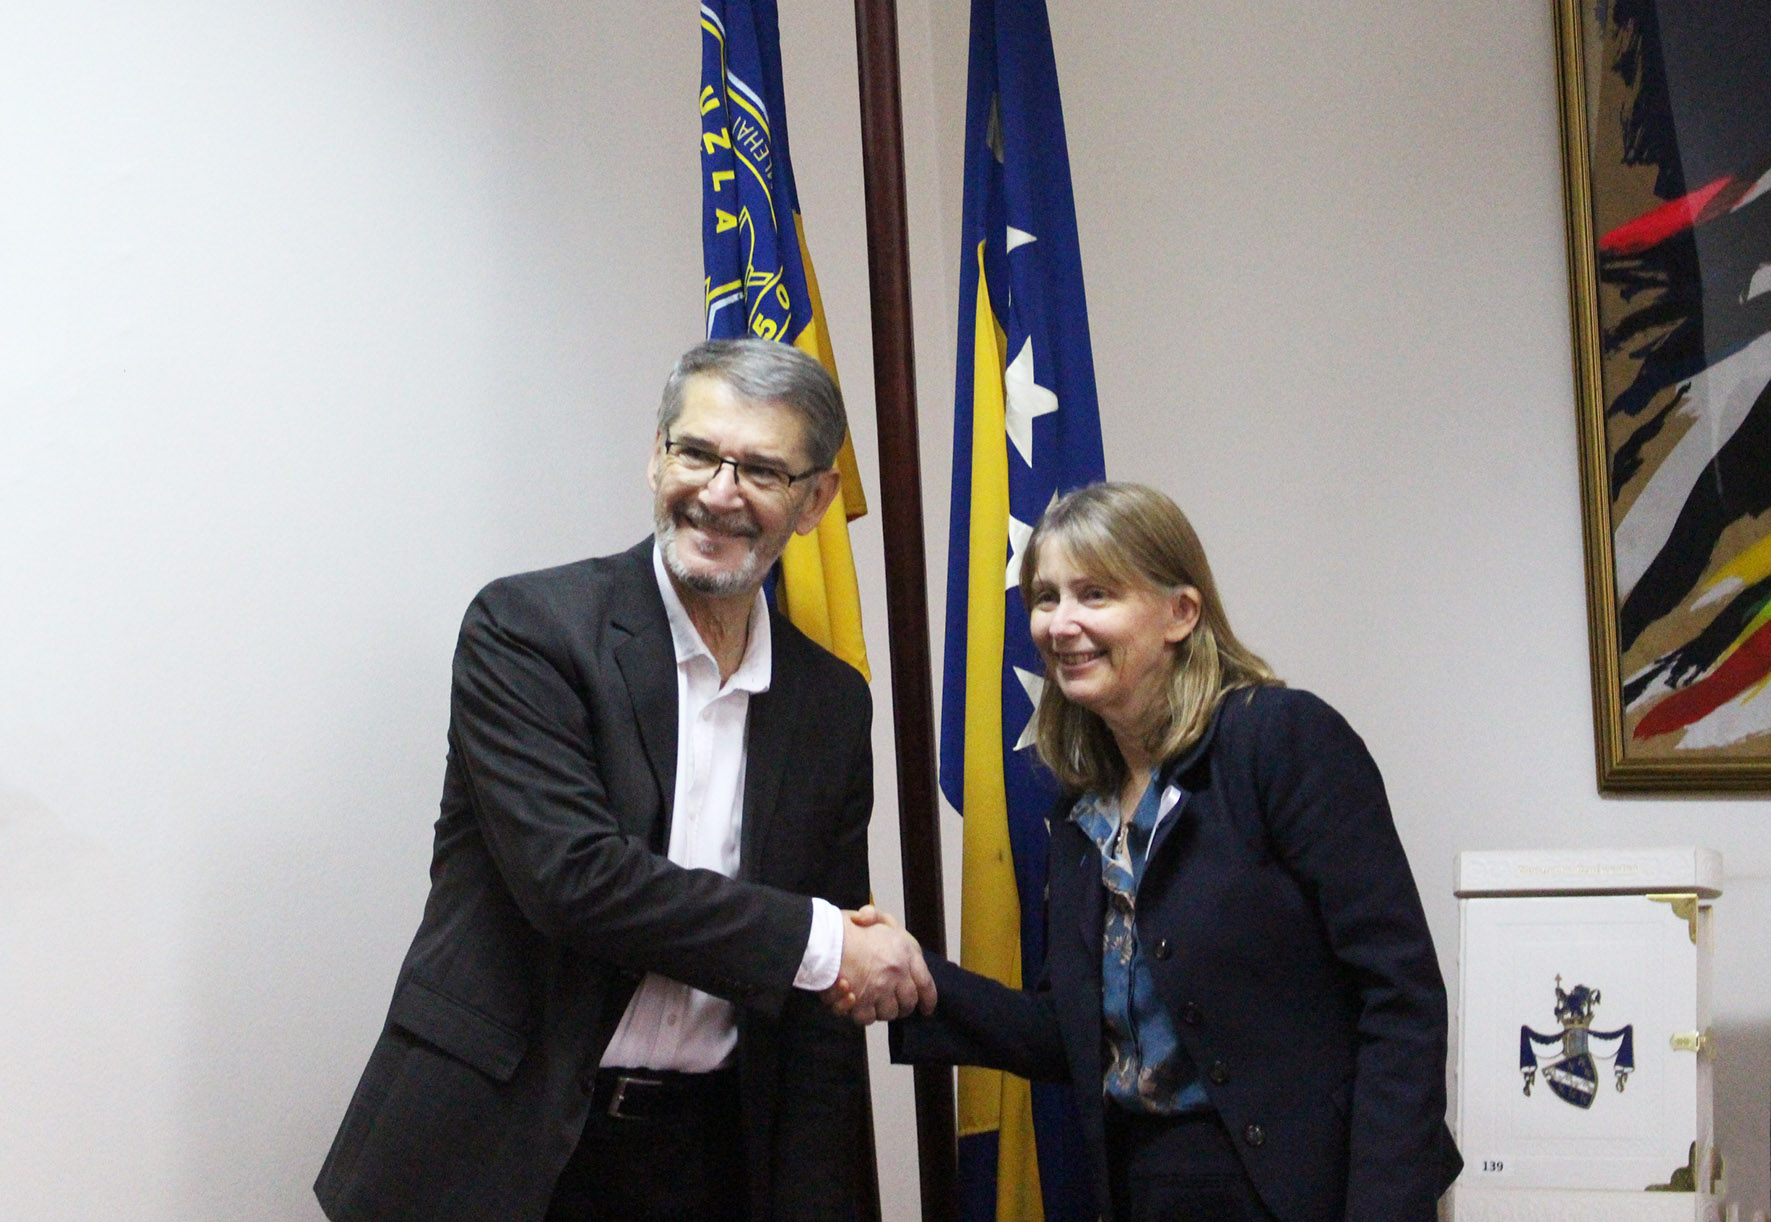 Šefica Misije OSCE-a BiH, ambasadorica Kathleen Kavalec, u posjeti gradonačelniku Tuzle